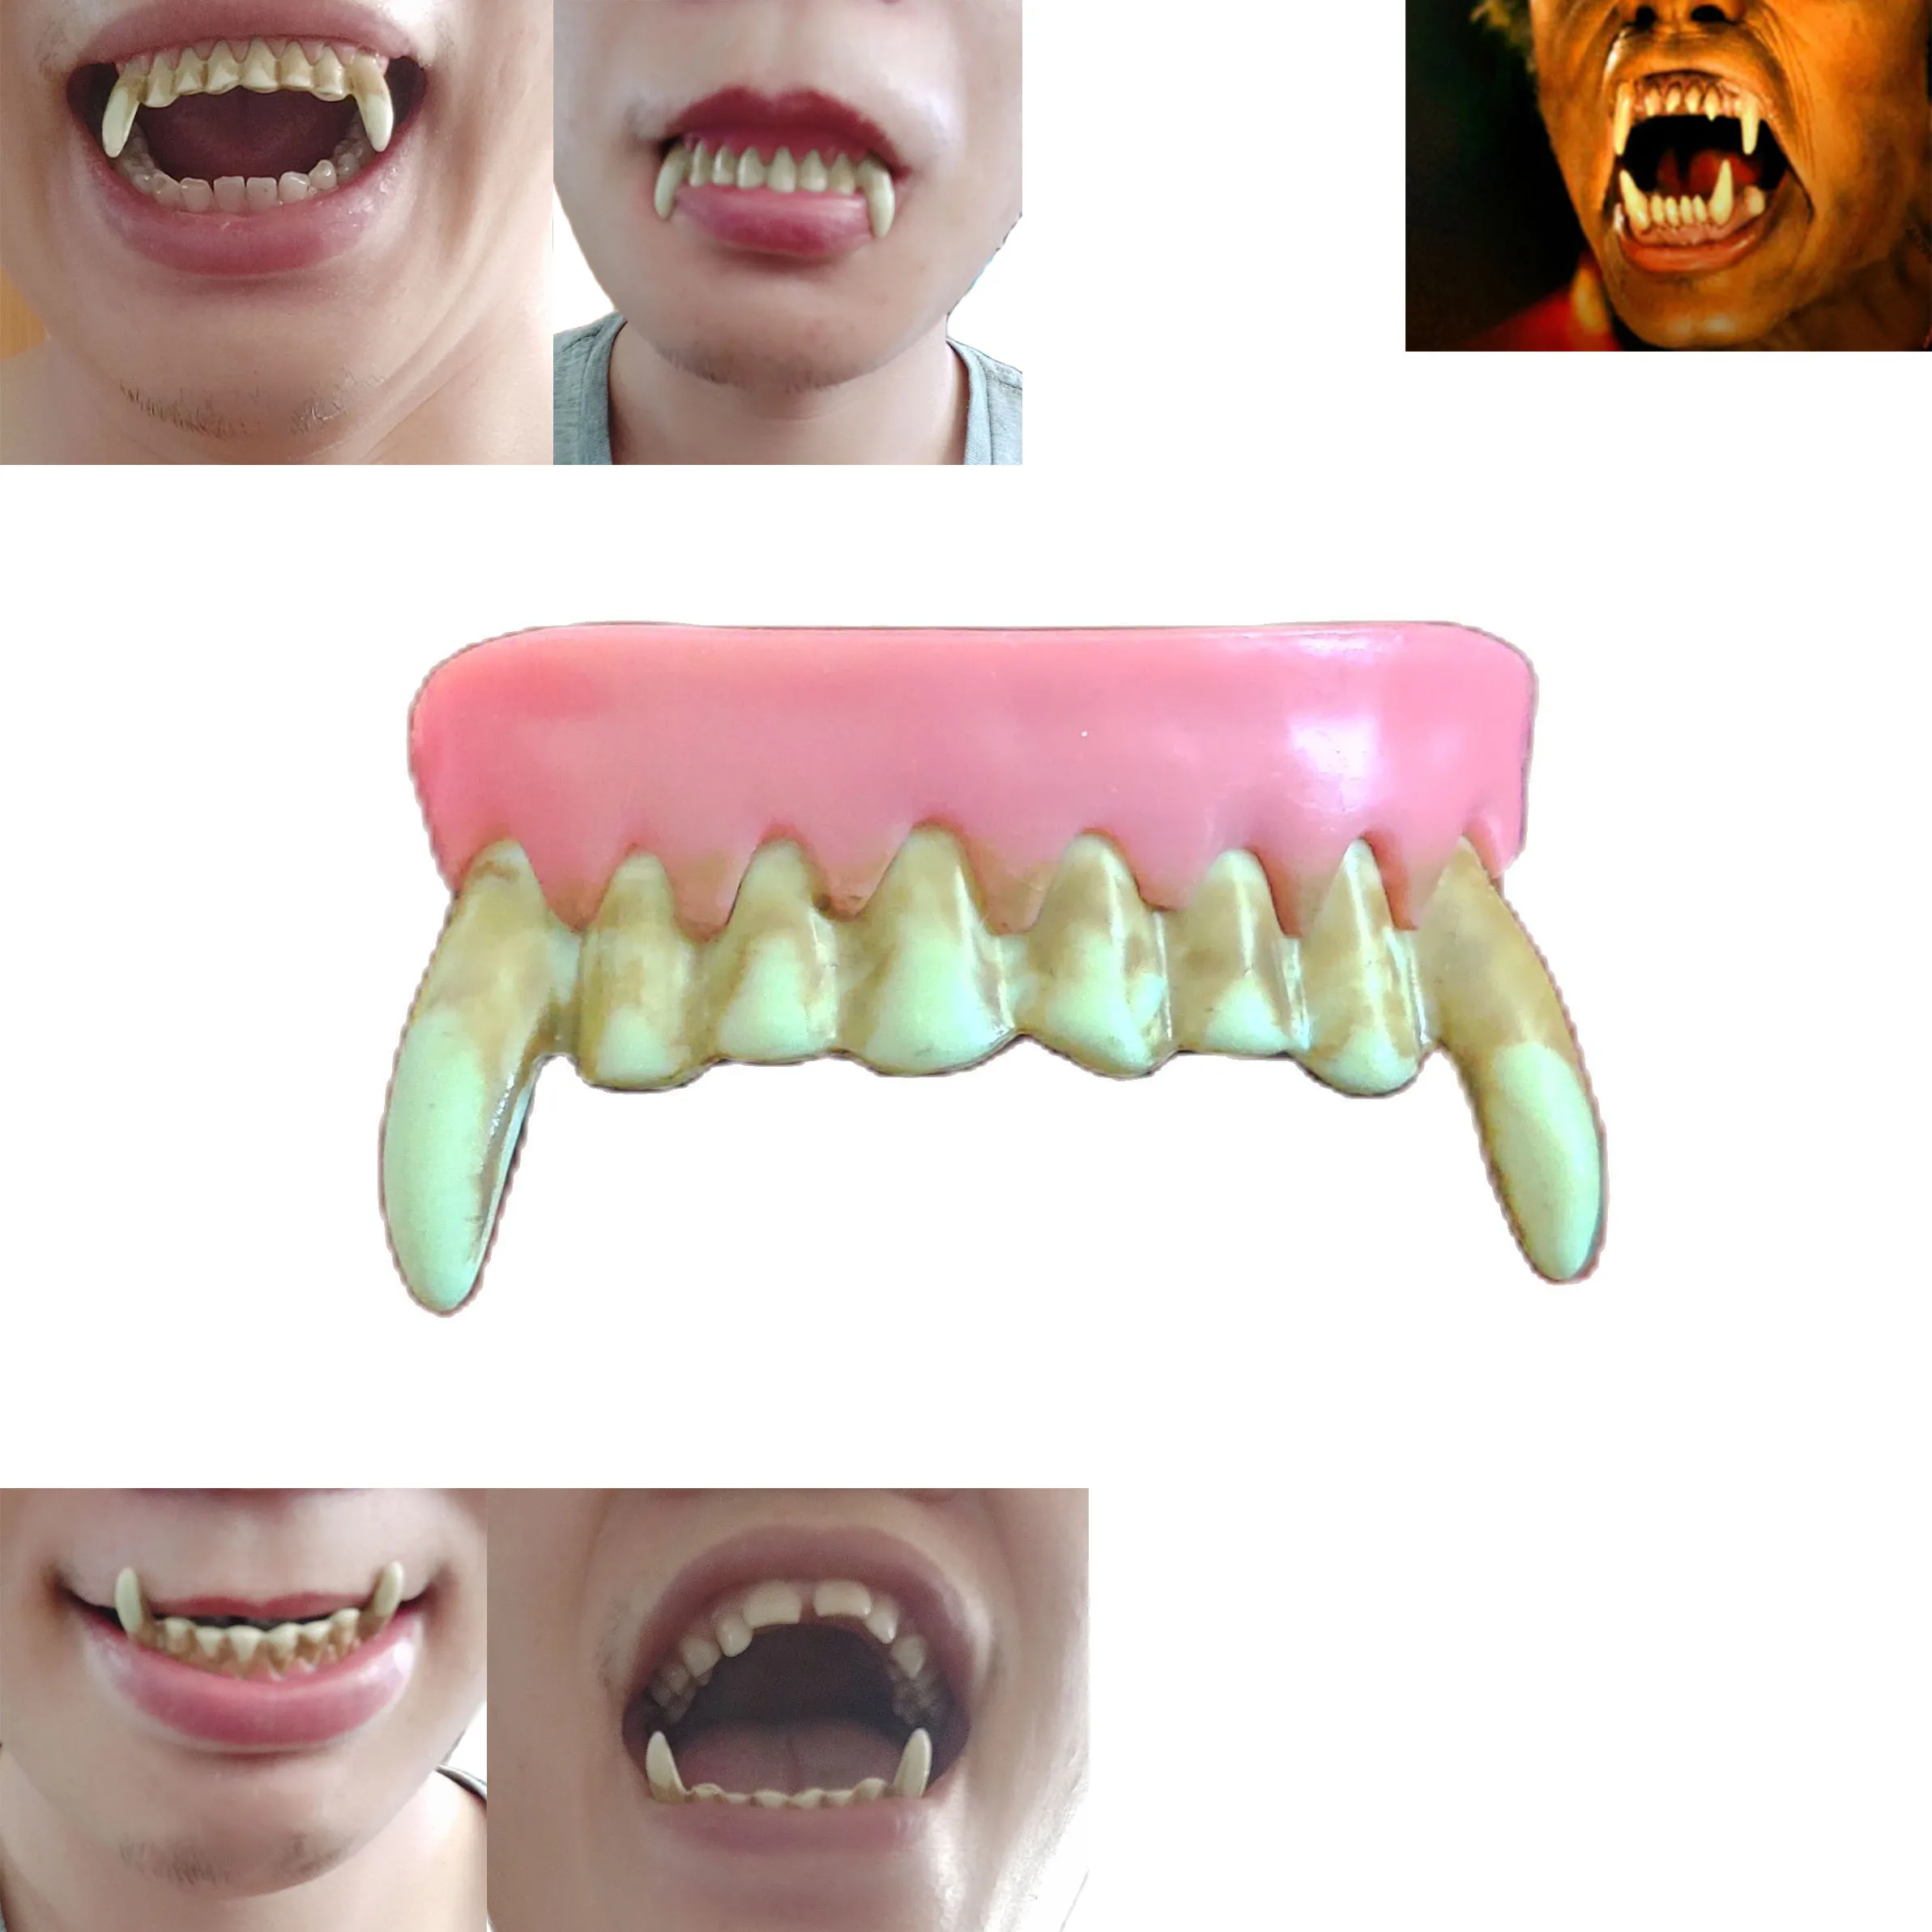 Colmillos de dientes para disfraz de hombre lobo, Dentaduras postizas, Zombie, fantasma, vampiro, Crazy Teeth, Cosplay, King Kong